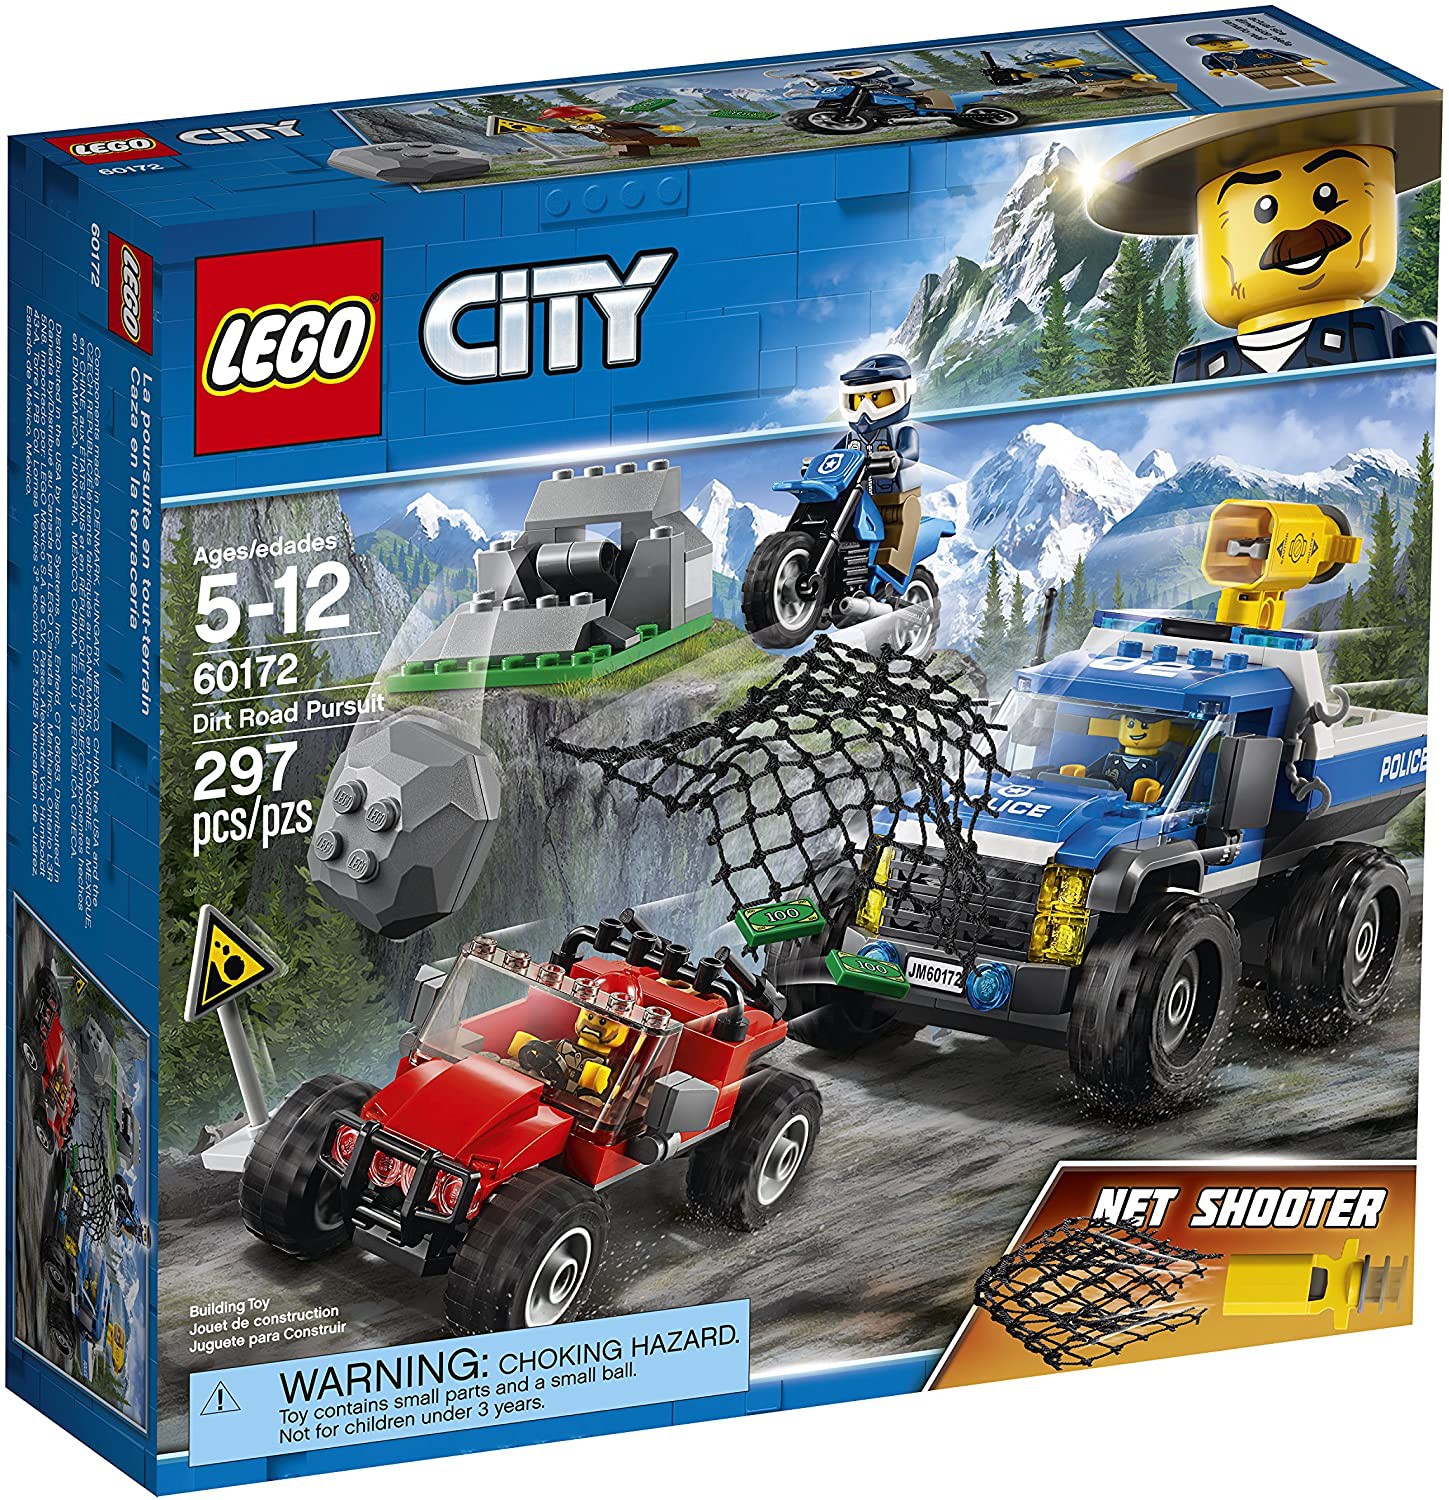 绝版LEGO乐高60172城市系列CITY警察ATV山地追击 吉普 摩托车